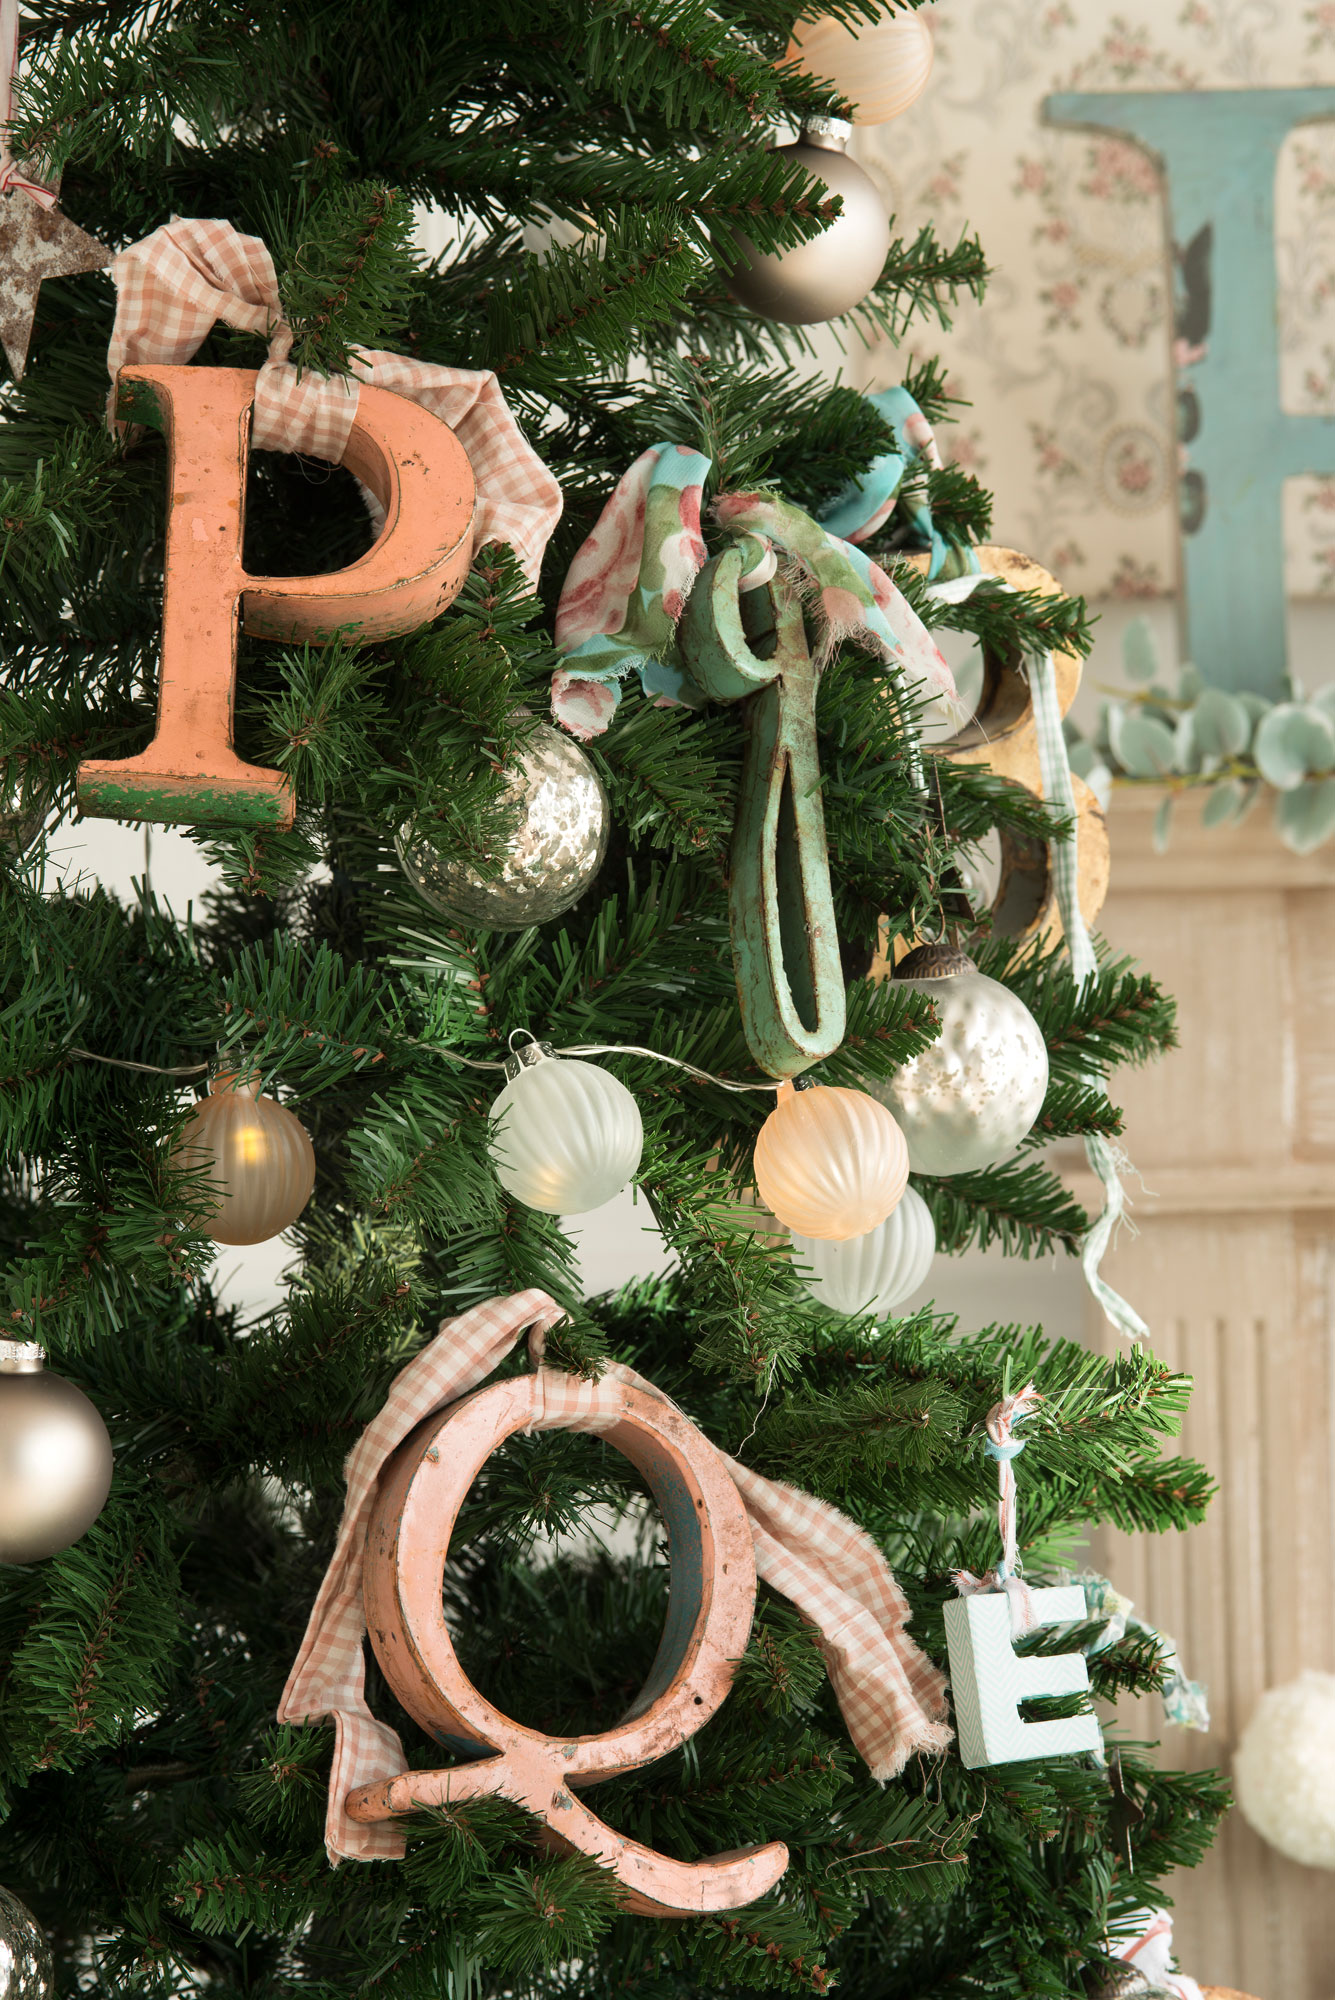 00418675 Ob. Detalle de árbol de Navidad con letras decorativas